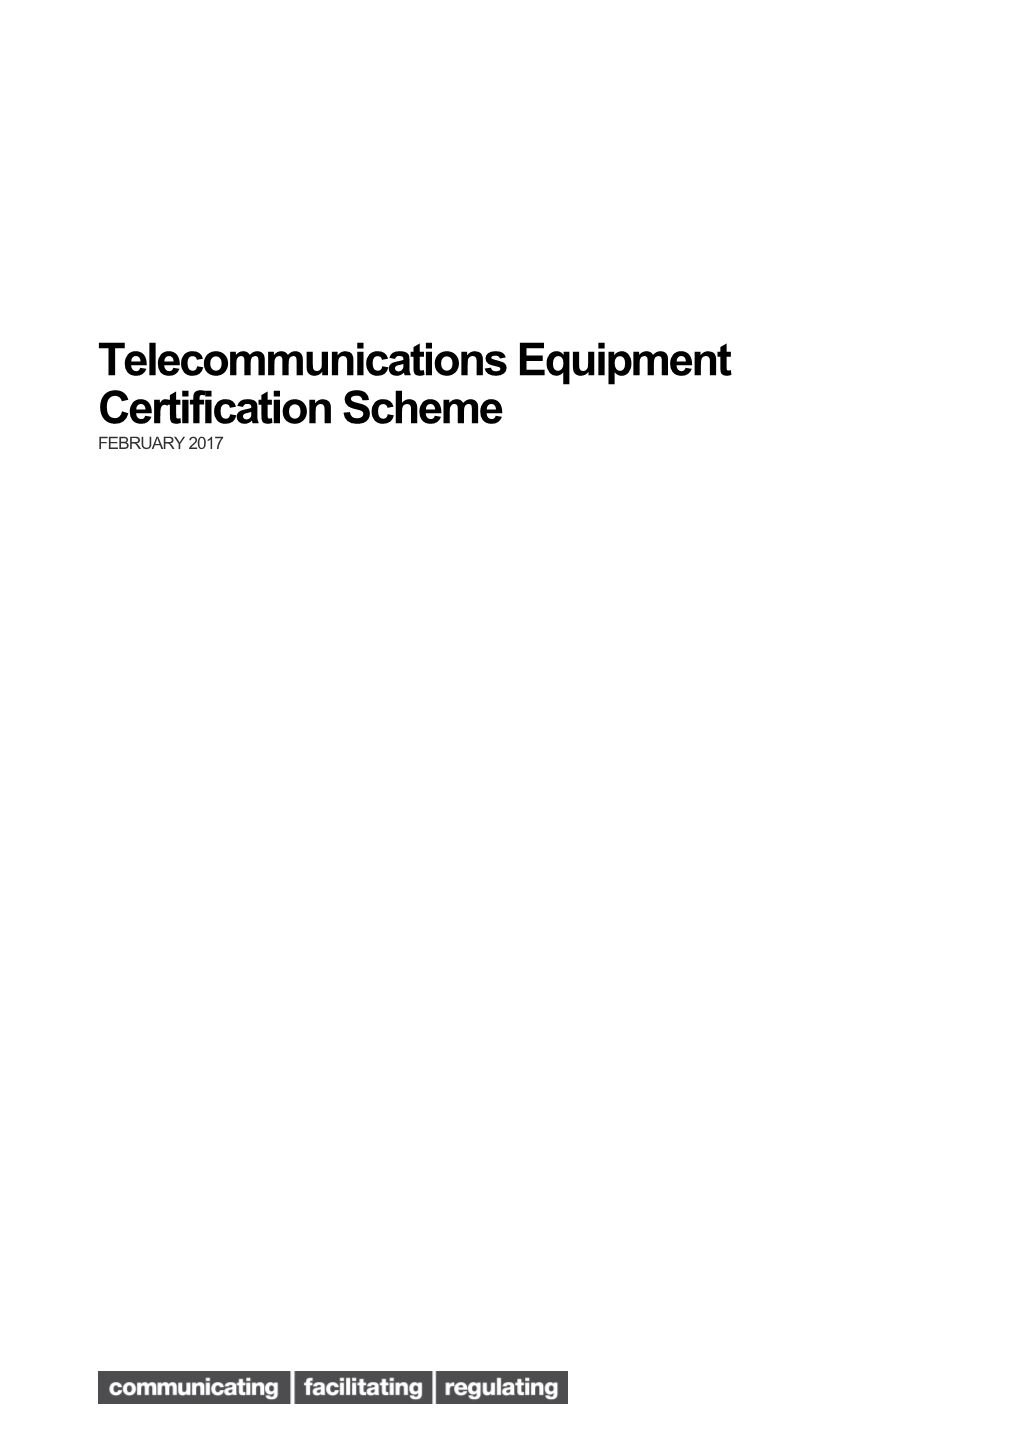 Telecommunications Equipment Certification Scheme